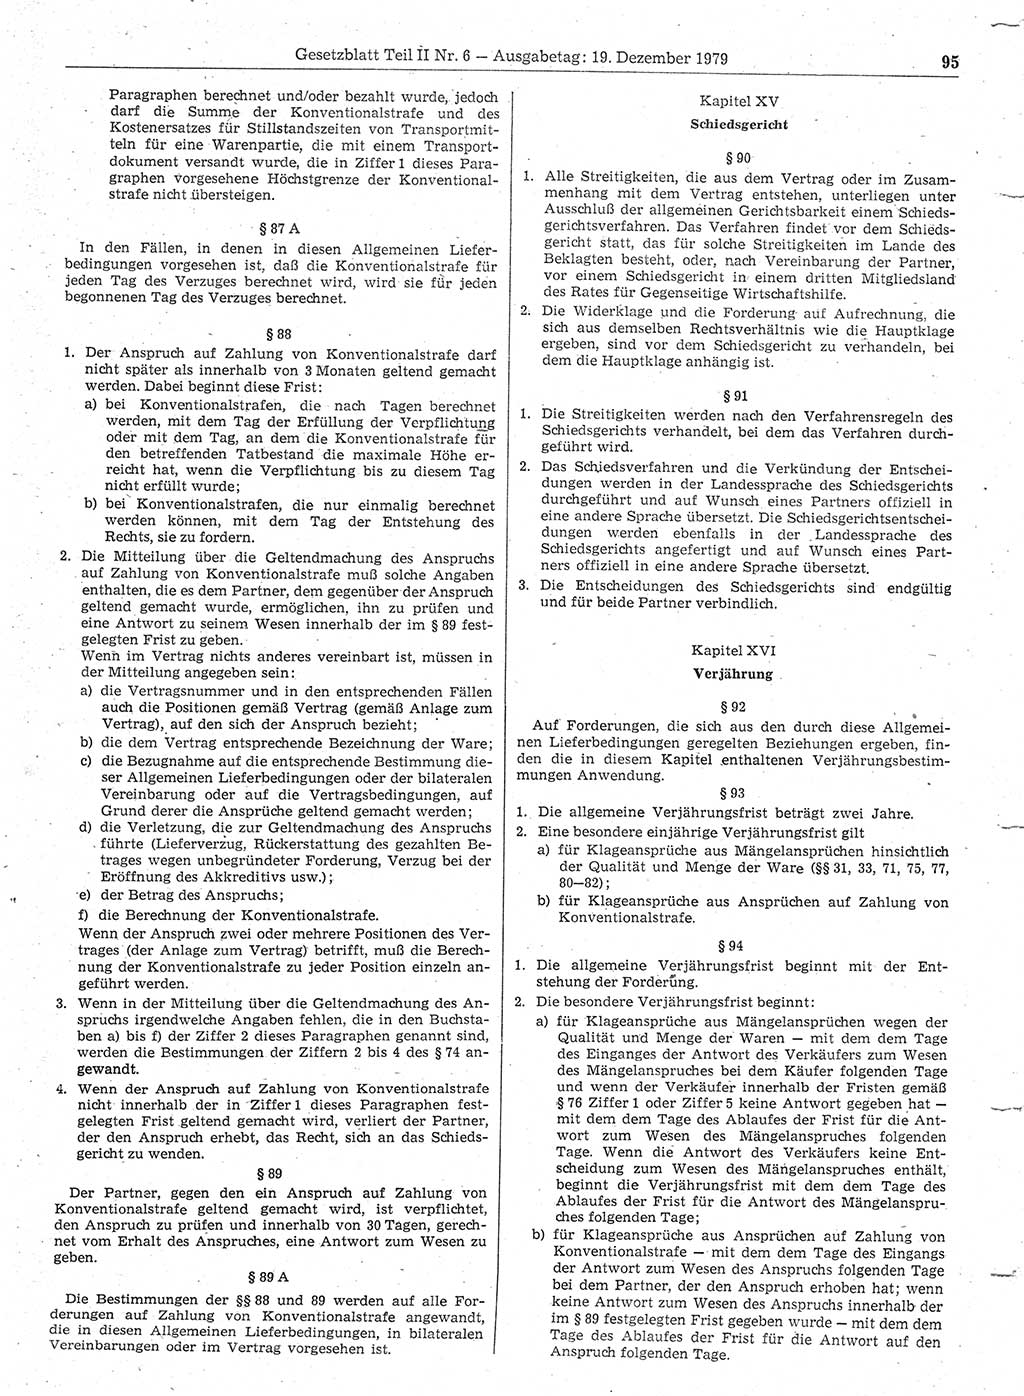 Gesetzblatt (GBl.) der Deutschen Demokratischen Republik (DDR) Teil ⅠⅠ 1979, Seite 95 (GBl. DDR ⅠⅠ 1979, S. 95)